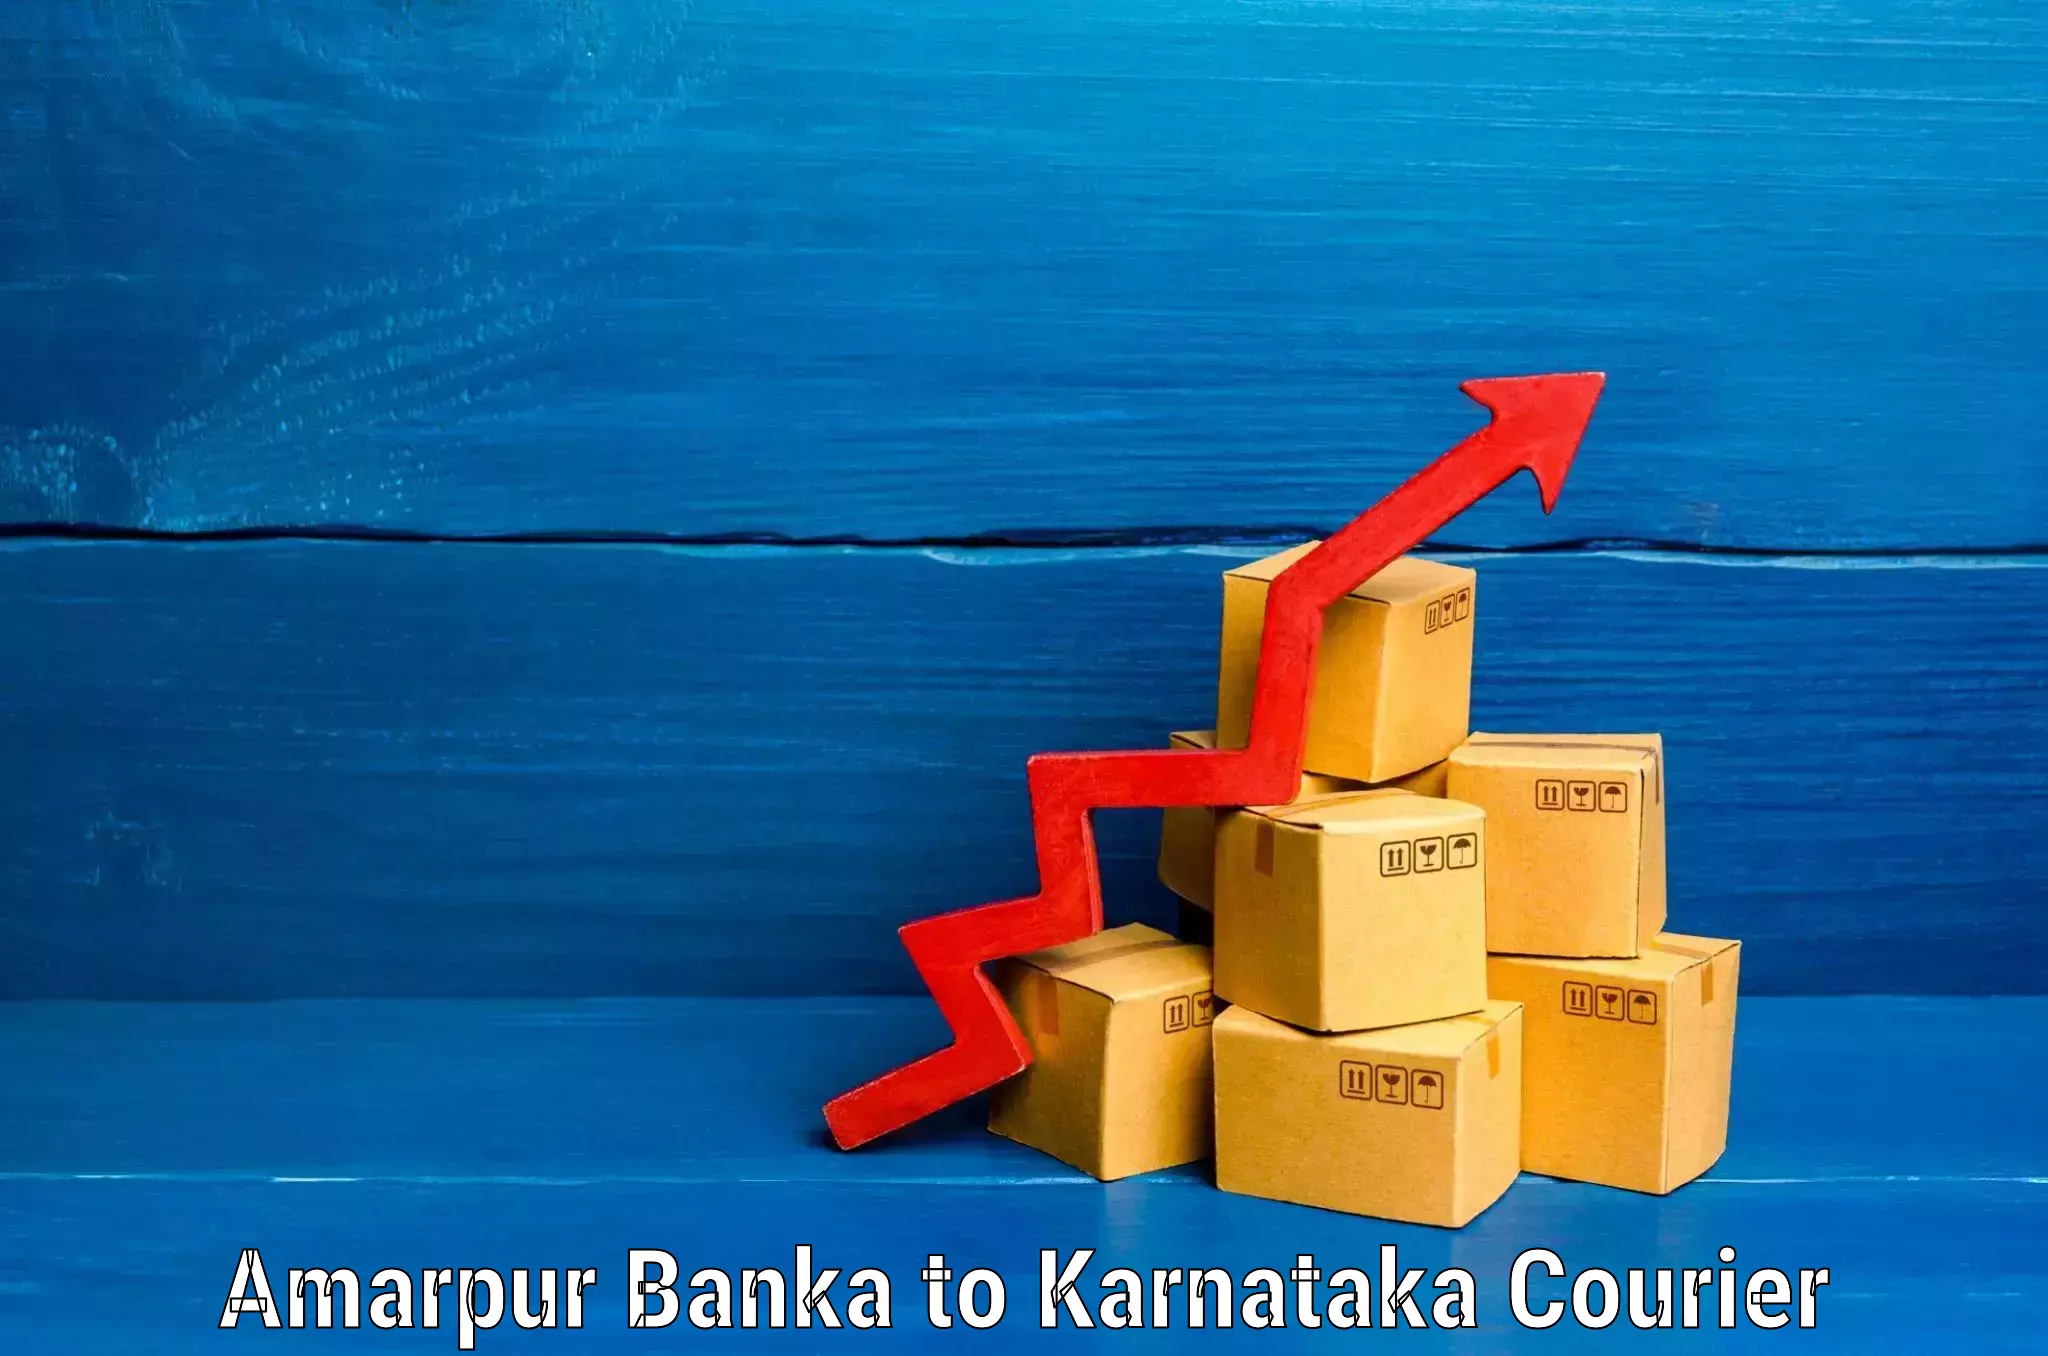 Luggage shipping estimate Amarpur Banka to Chikkamagaluru